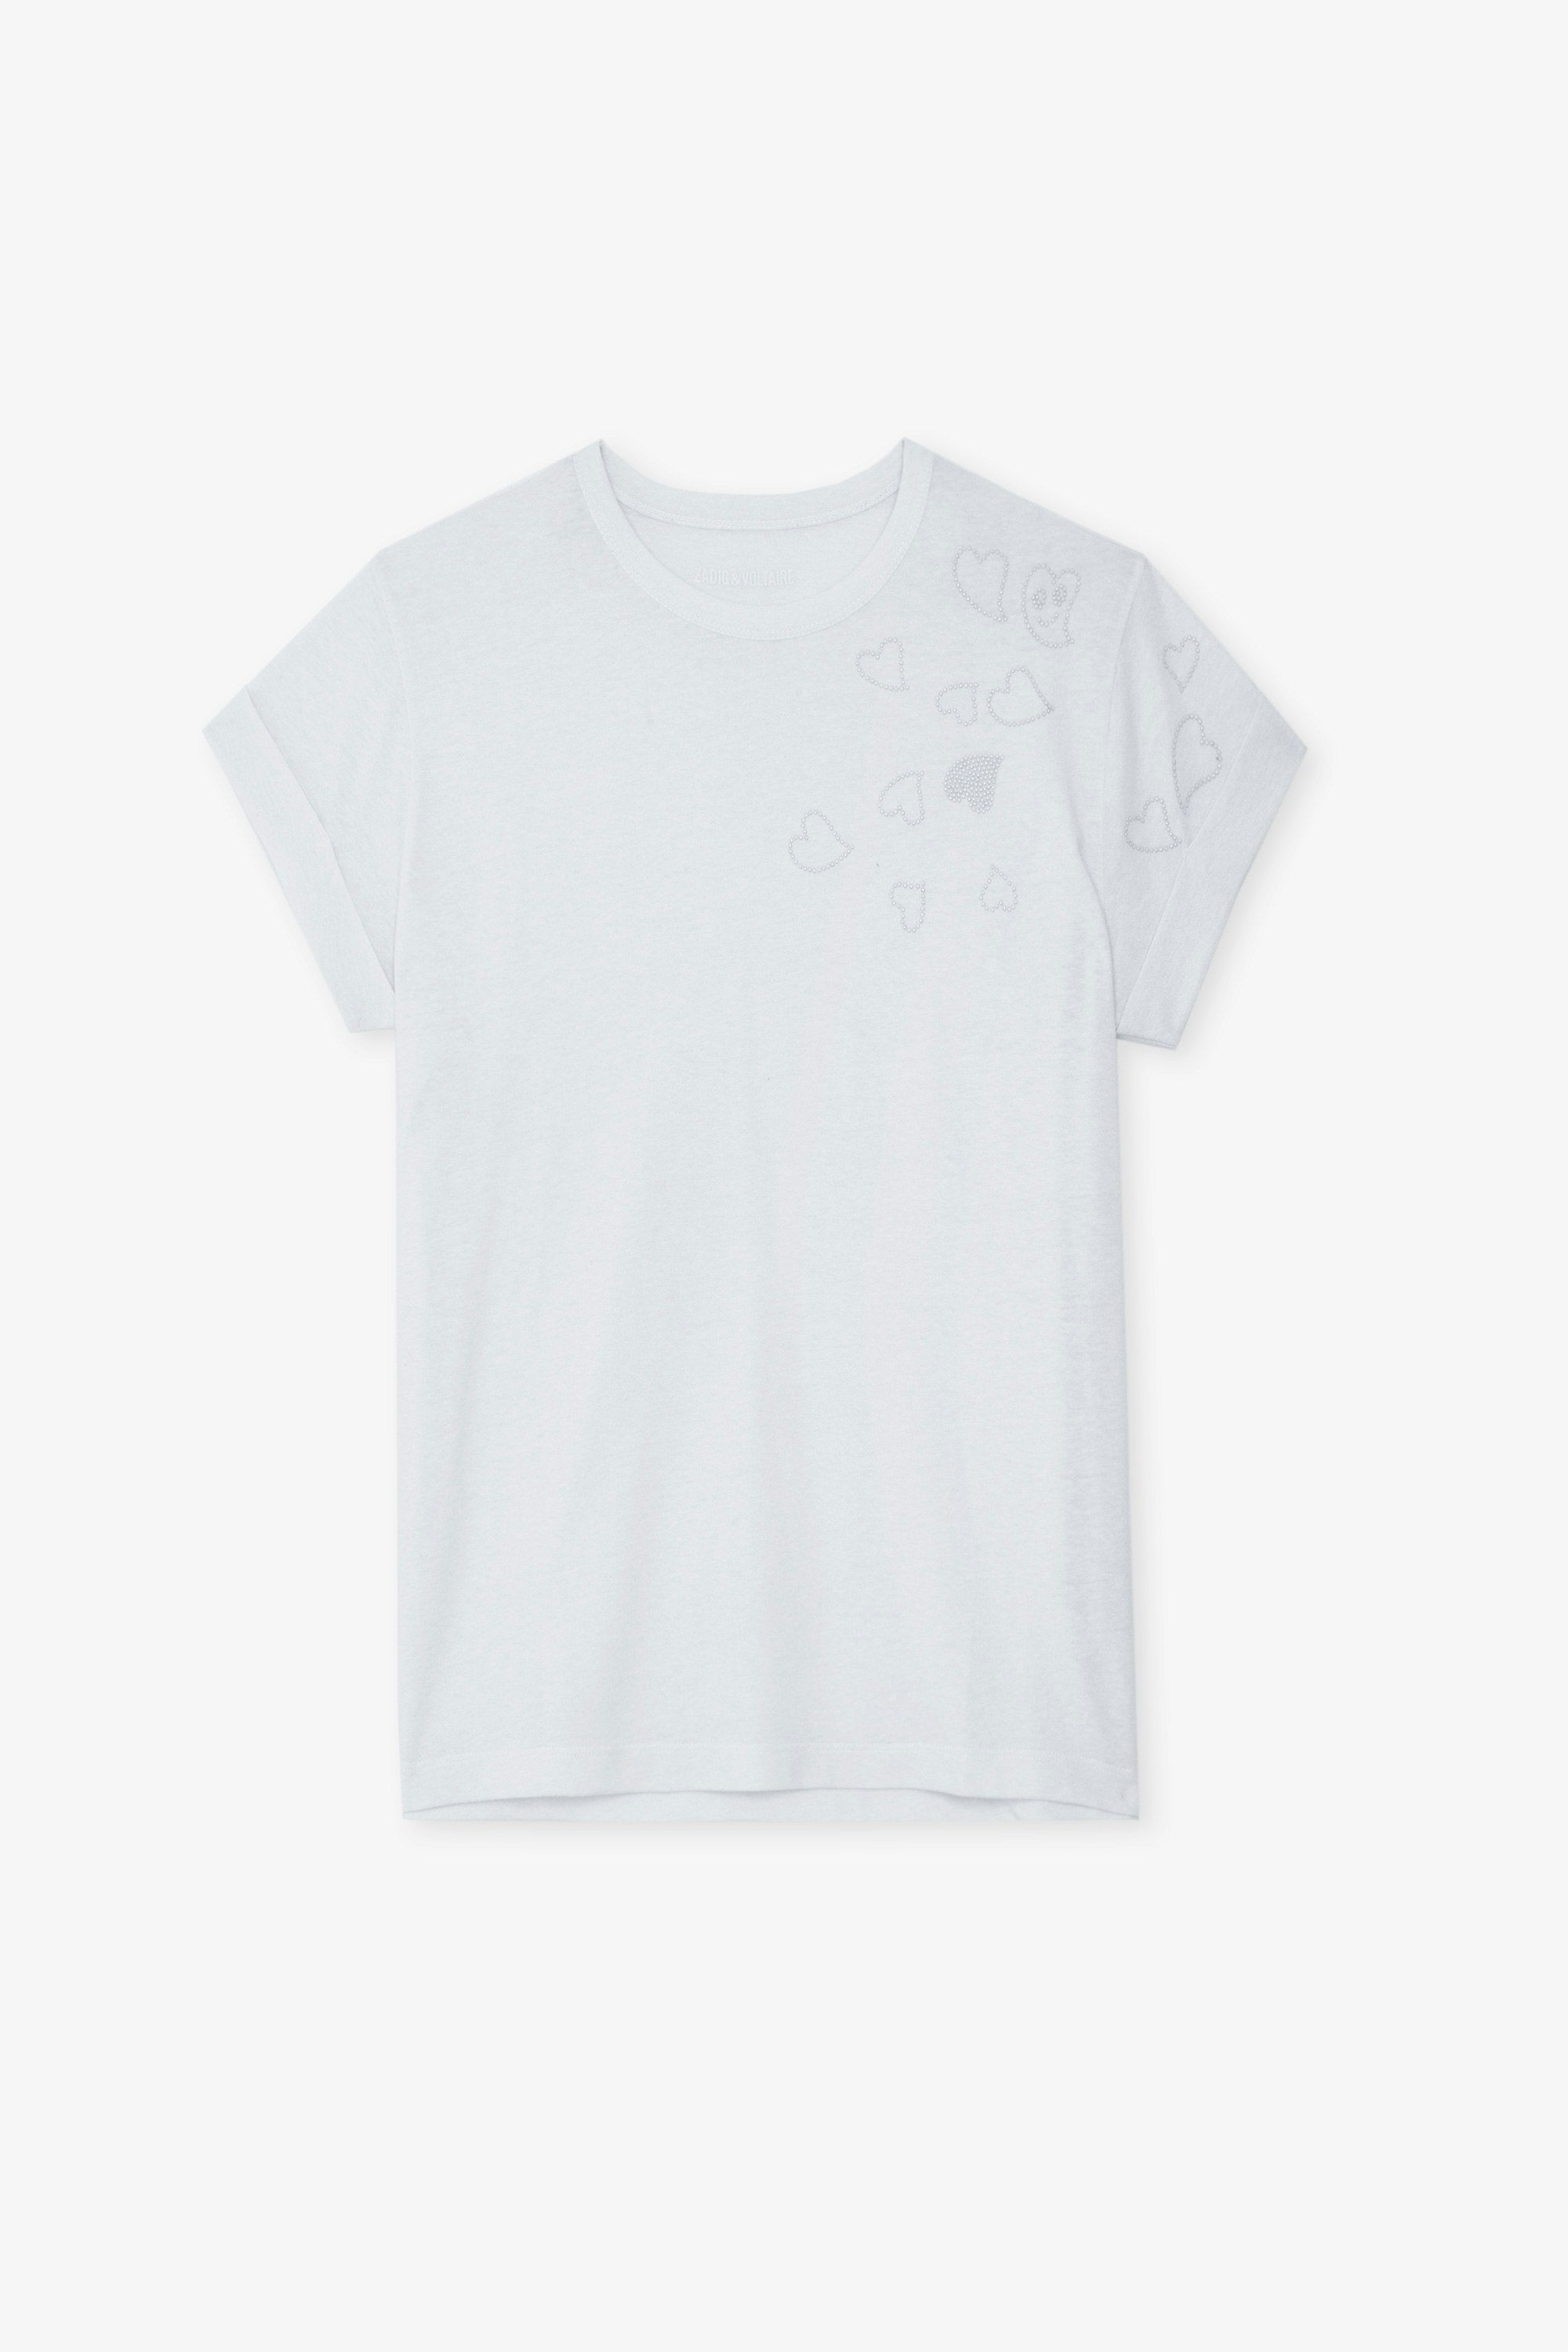 T-shirt Anya - T shirt bianca girocollo con maniche corte e borchie a forma di cuore.